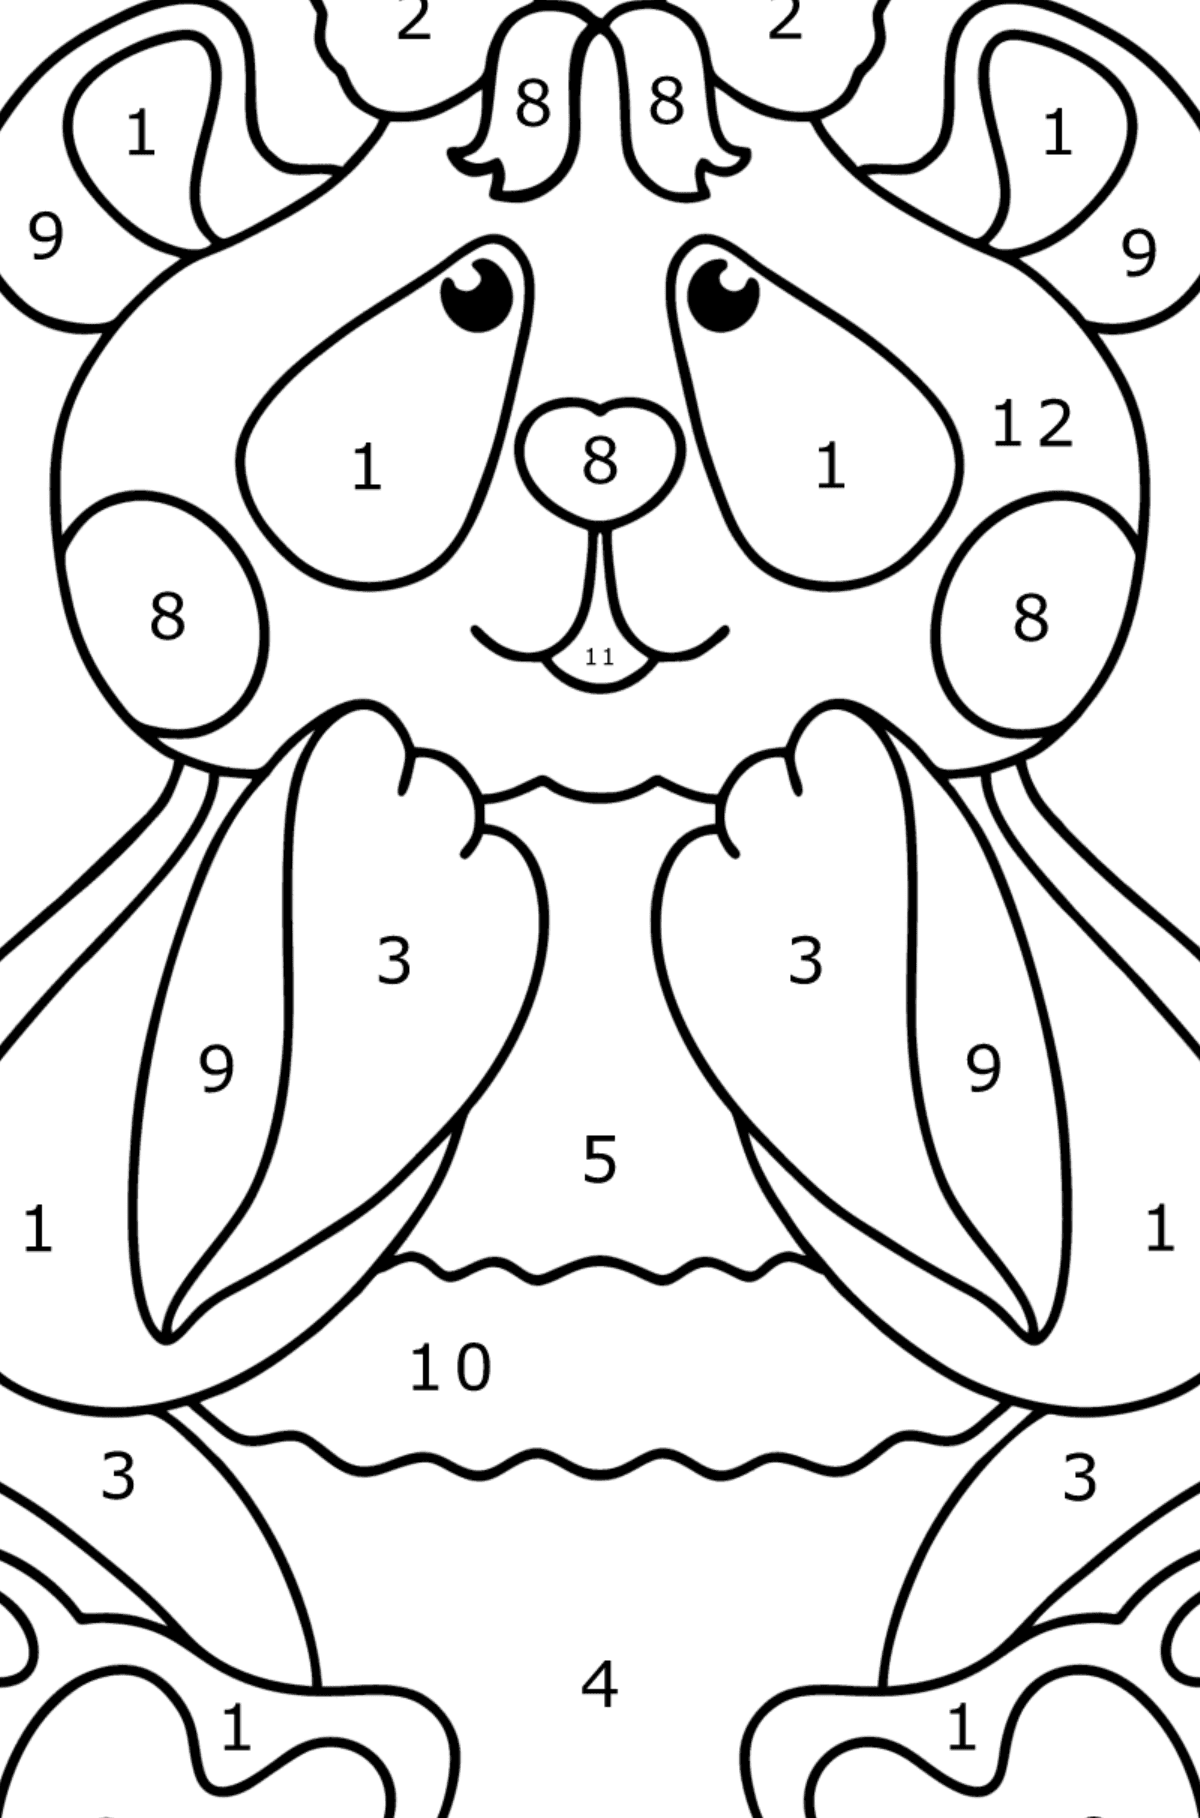 Boyama sayfası bebek panda - Sayılarla Boyama çocuklar için